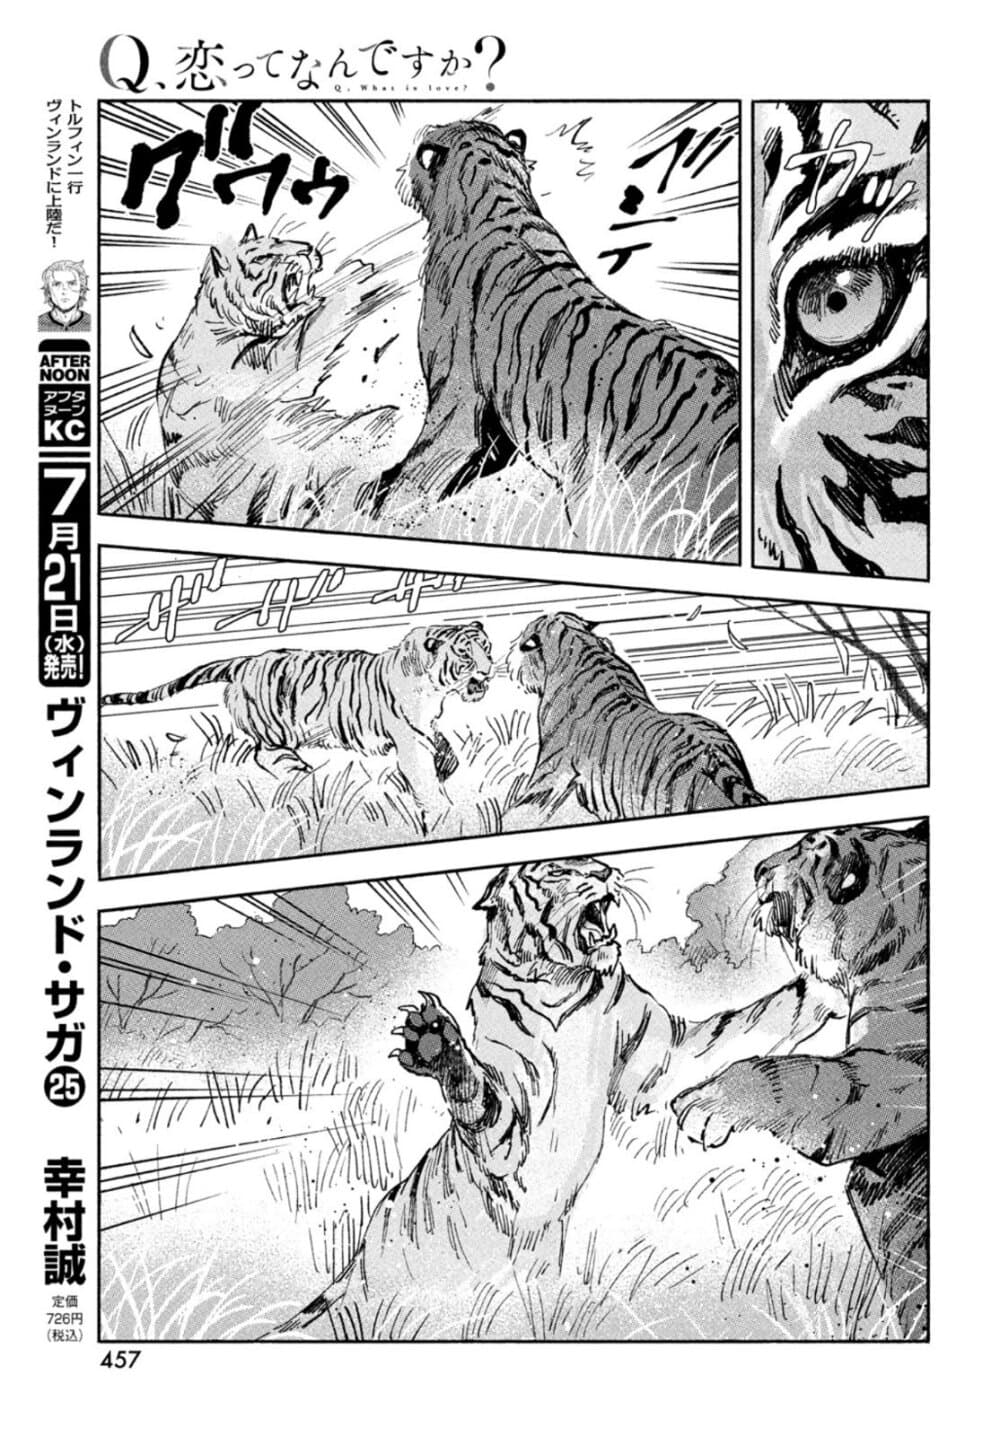 Q Koitte Nandesuka? 4-Panthera Tigris